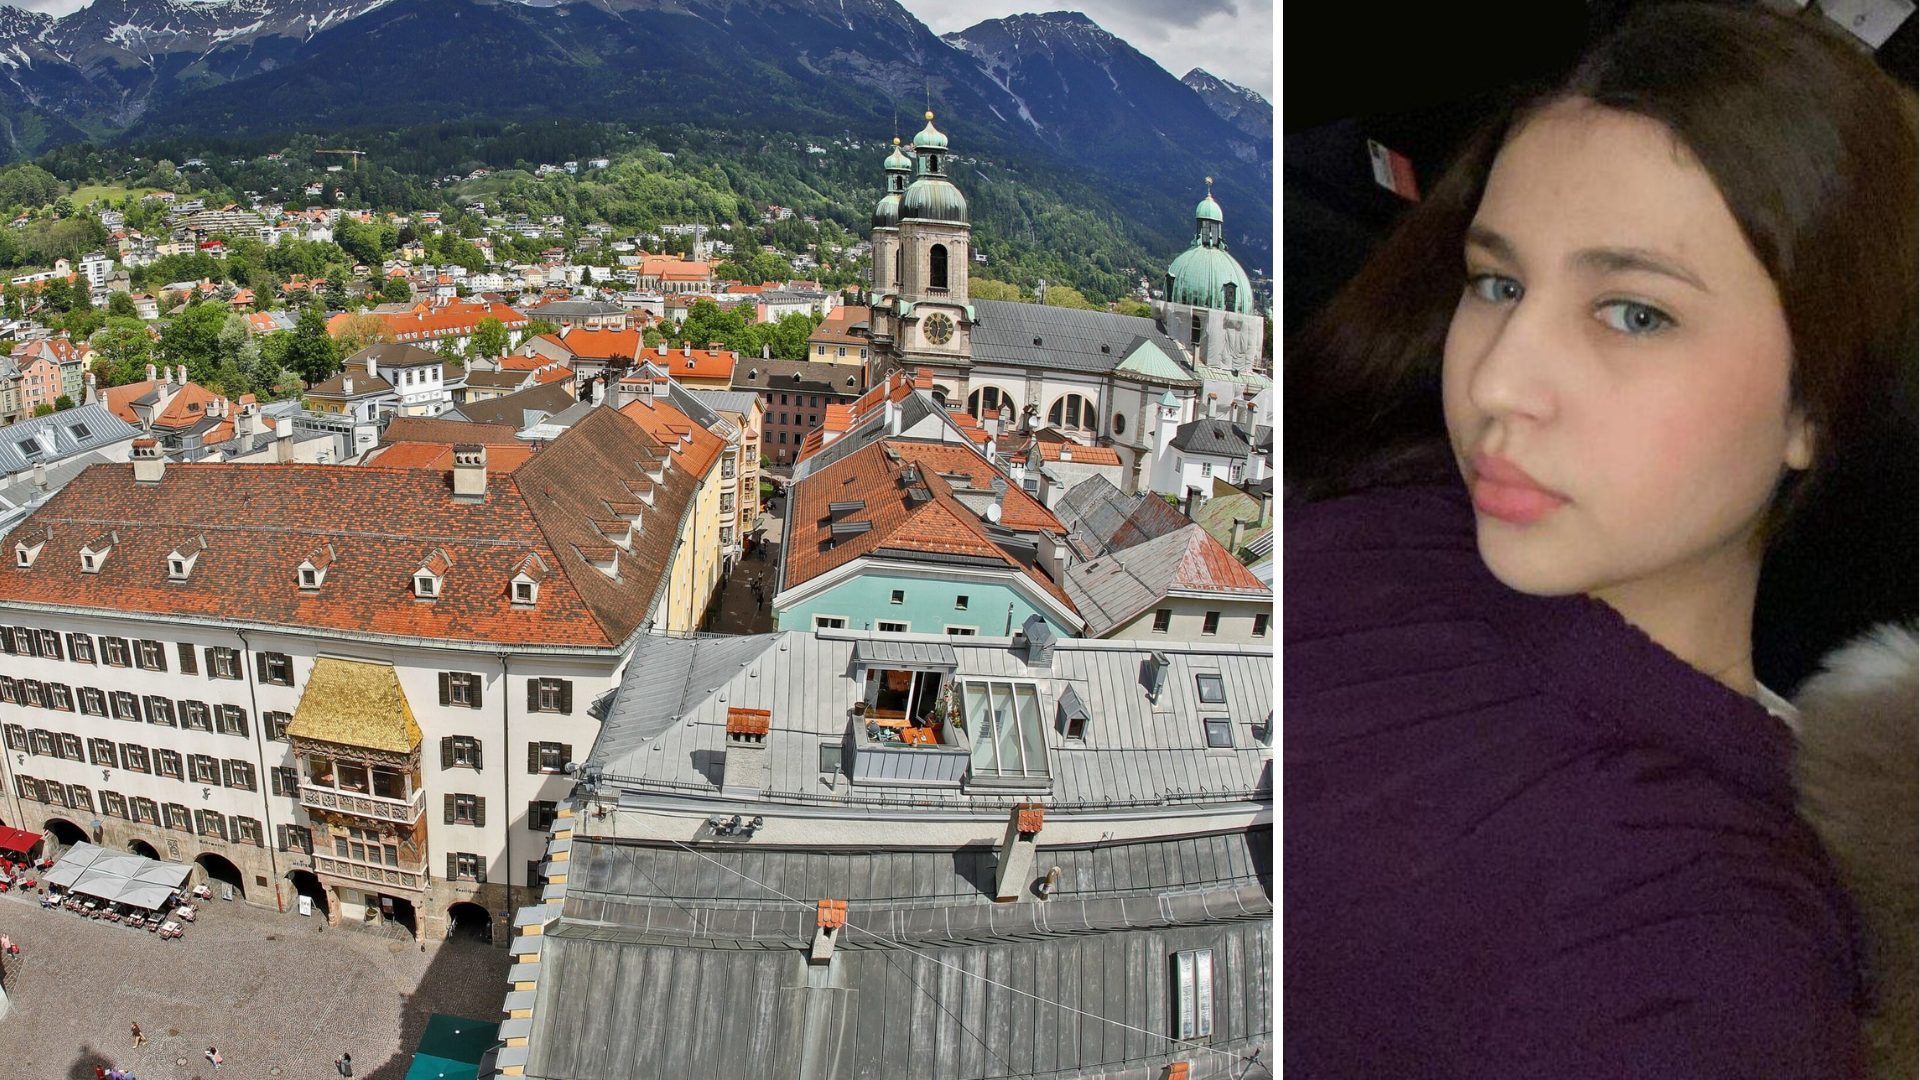 Sara (15) lebte in Innsbruck. Nun dürfte sie nach islamischen Regeln leben. Ihr Aufenthaltsort ist unbekannt. (Bild: Christof Birbaumer/Polizei)